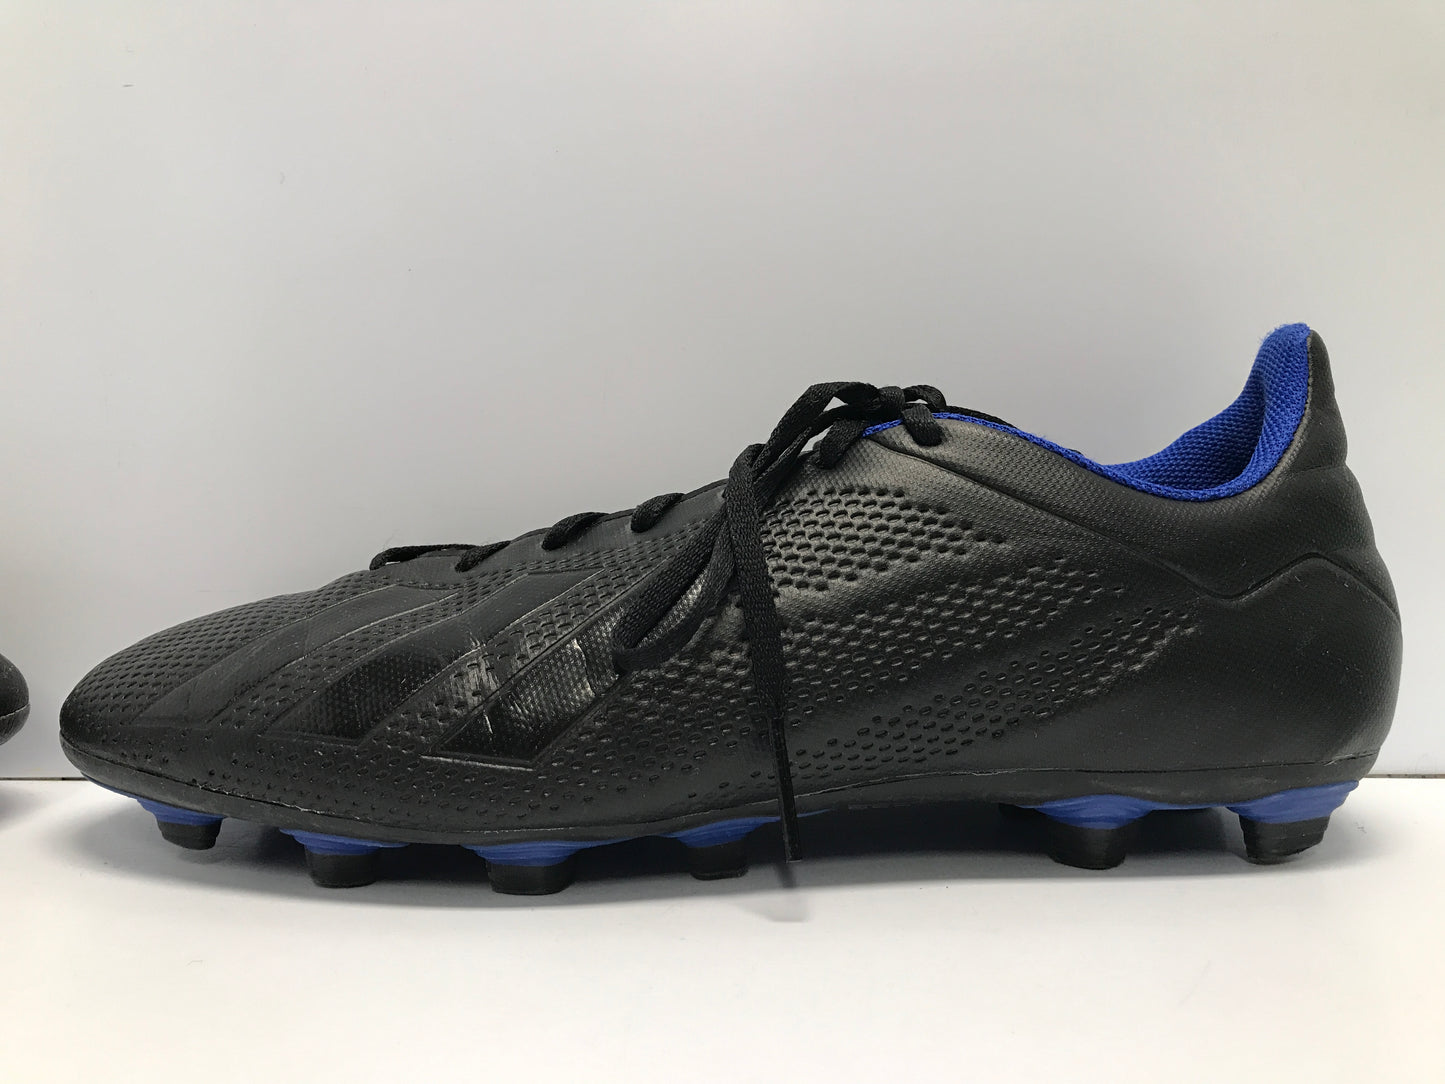 Soccer Shoes Cleats Men's Size 10.5 Adidas Black Blue Excellent